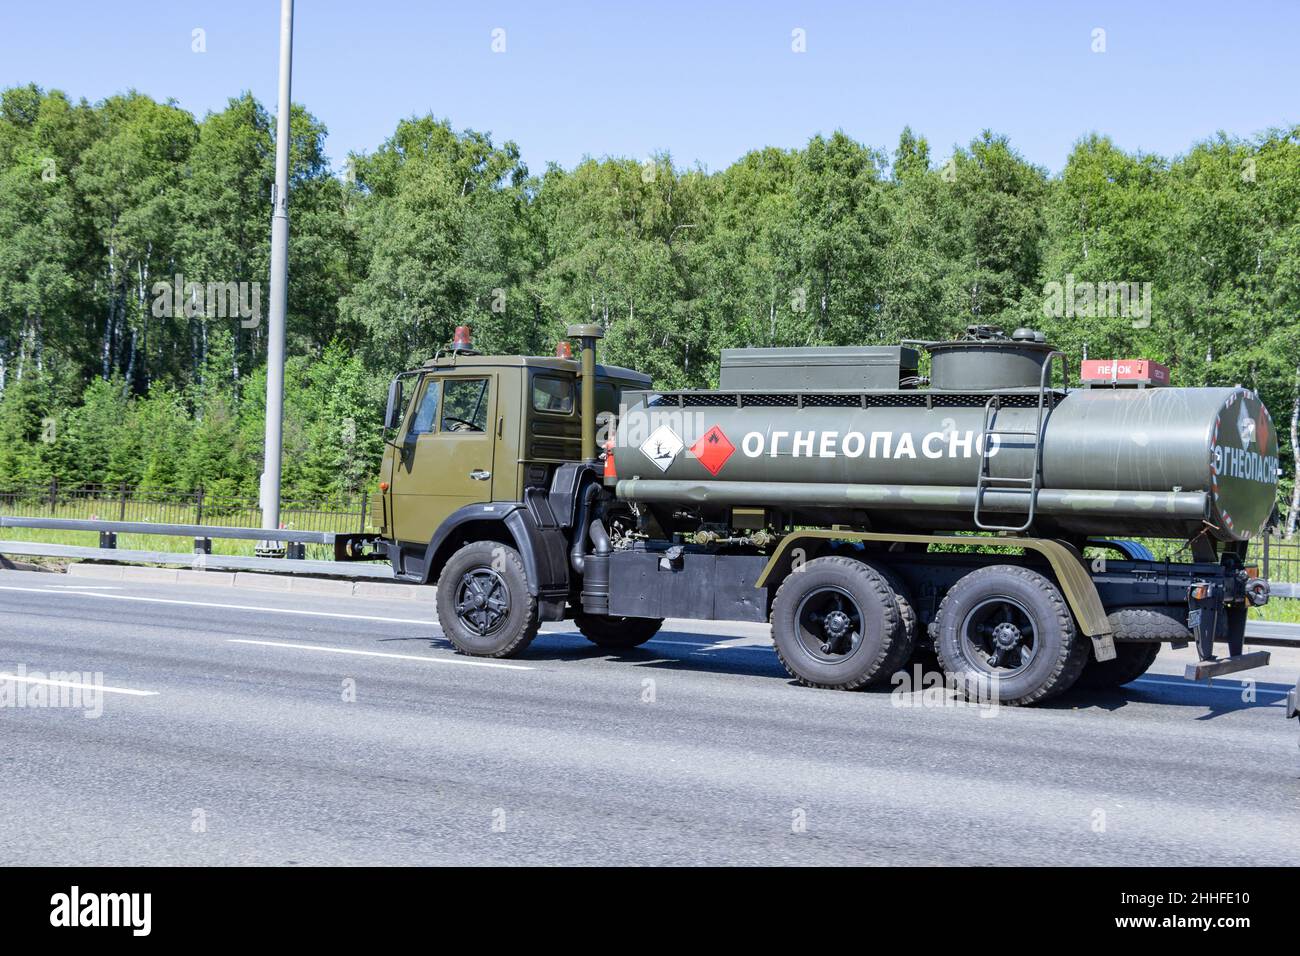 Mosca, Russia - 06 luglio 2021: Auto verde con attrezzatura speciale con un test in russo 'infiammabile' sulla strada Foto Stock